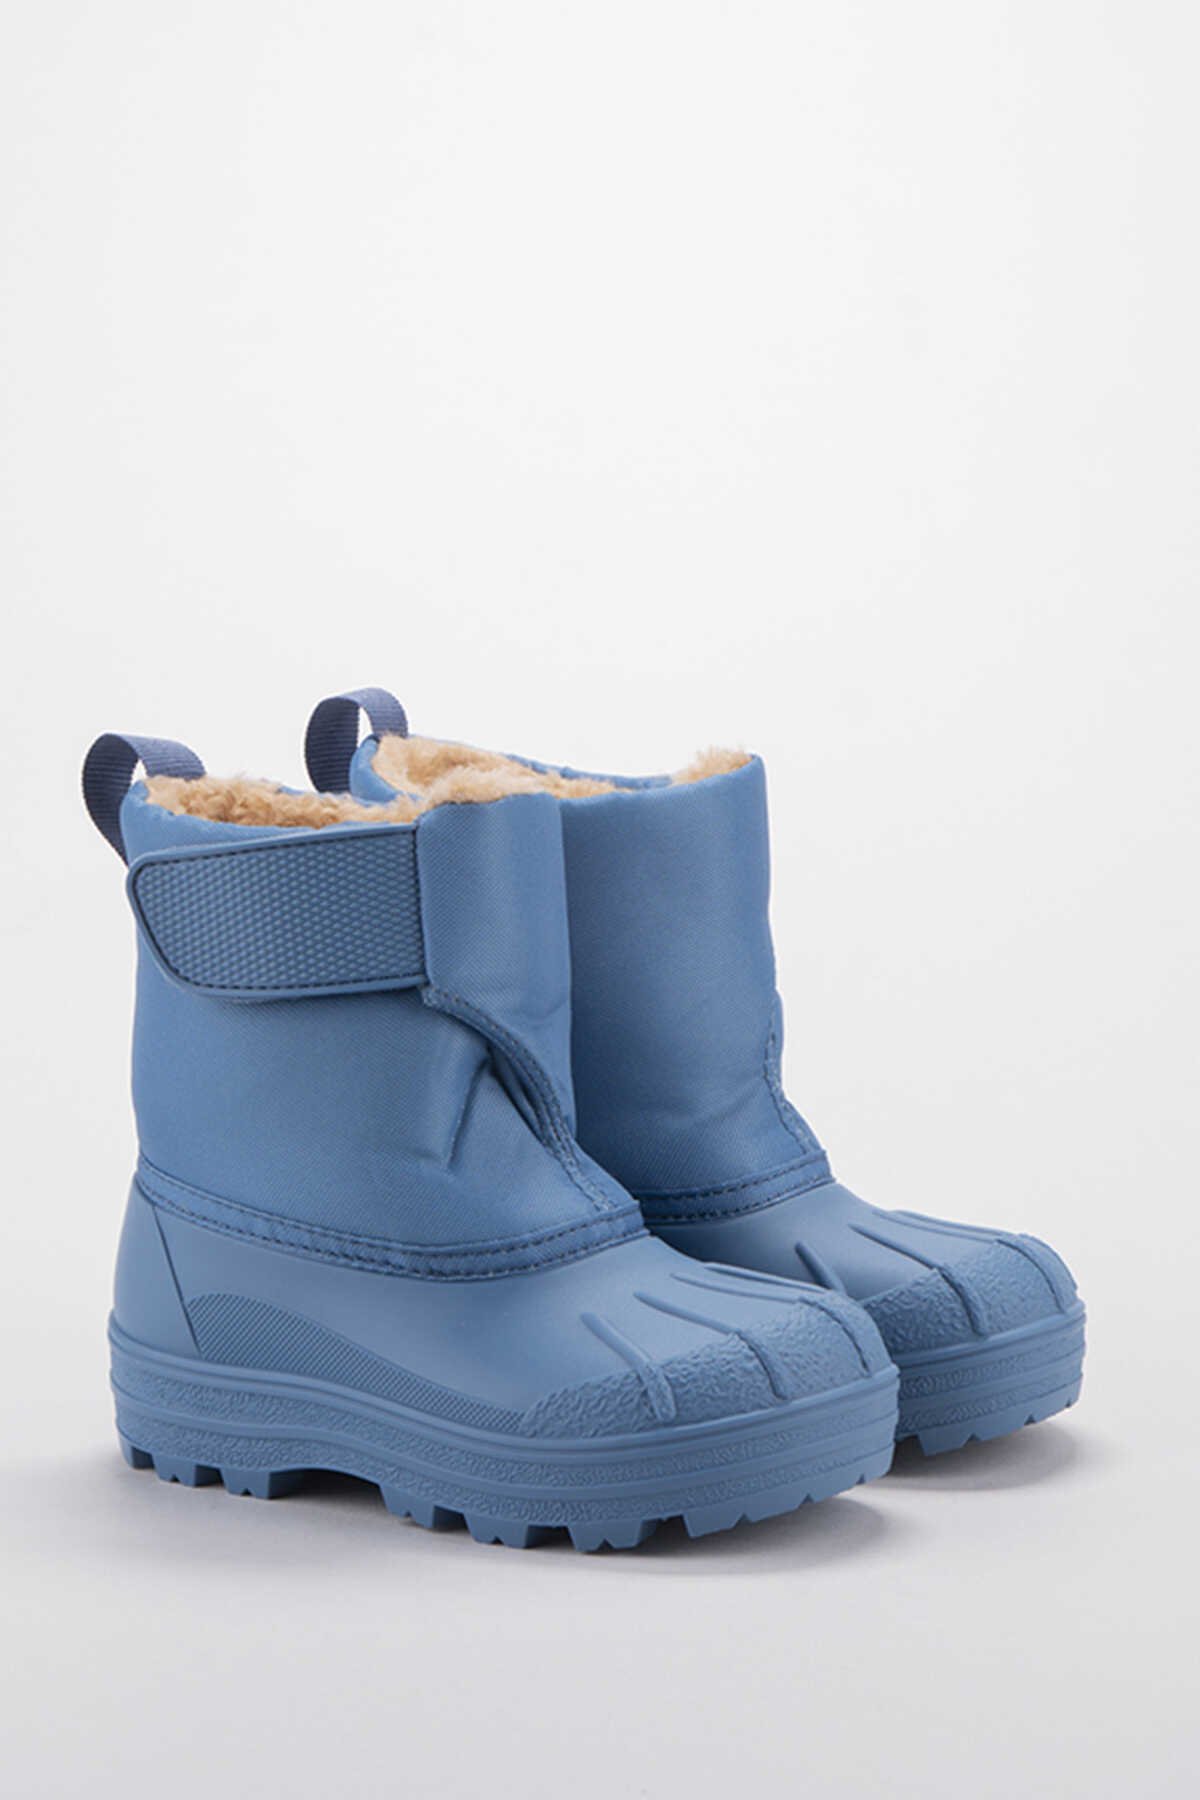 Igor - Igor NEU Yağmur Çizmesi Unisex Çocuk Ayakkabı Açık Mavi